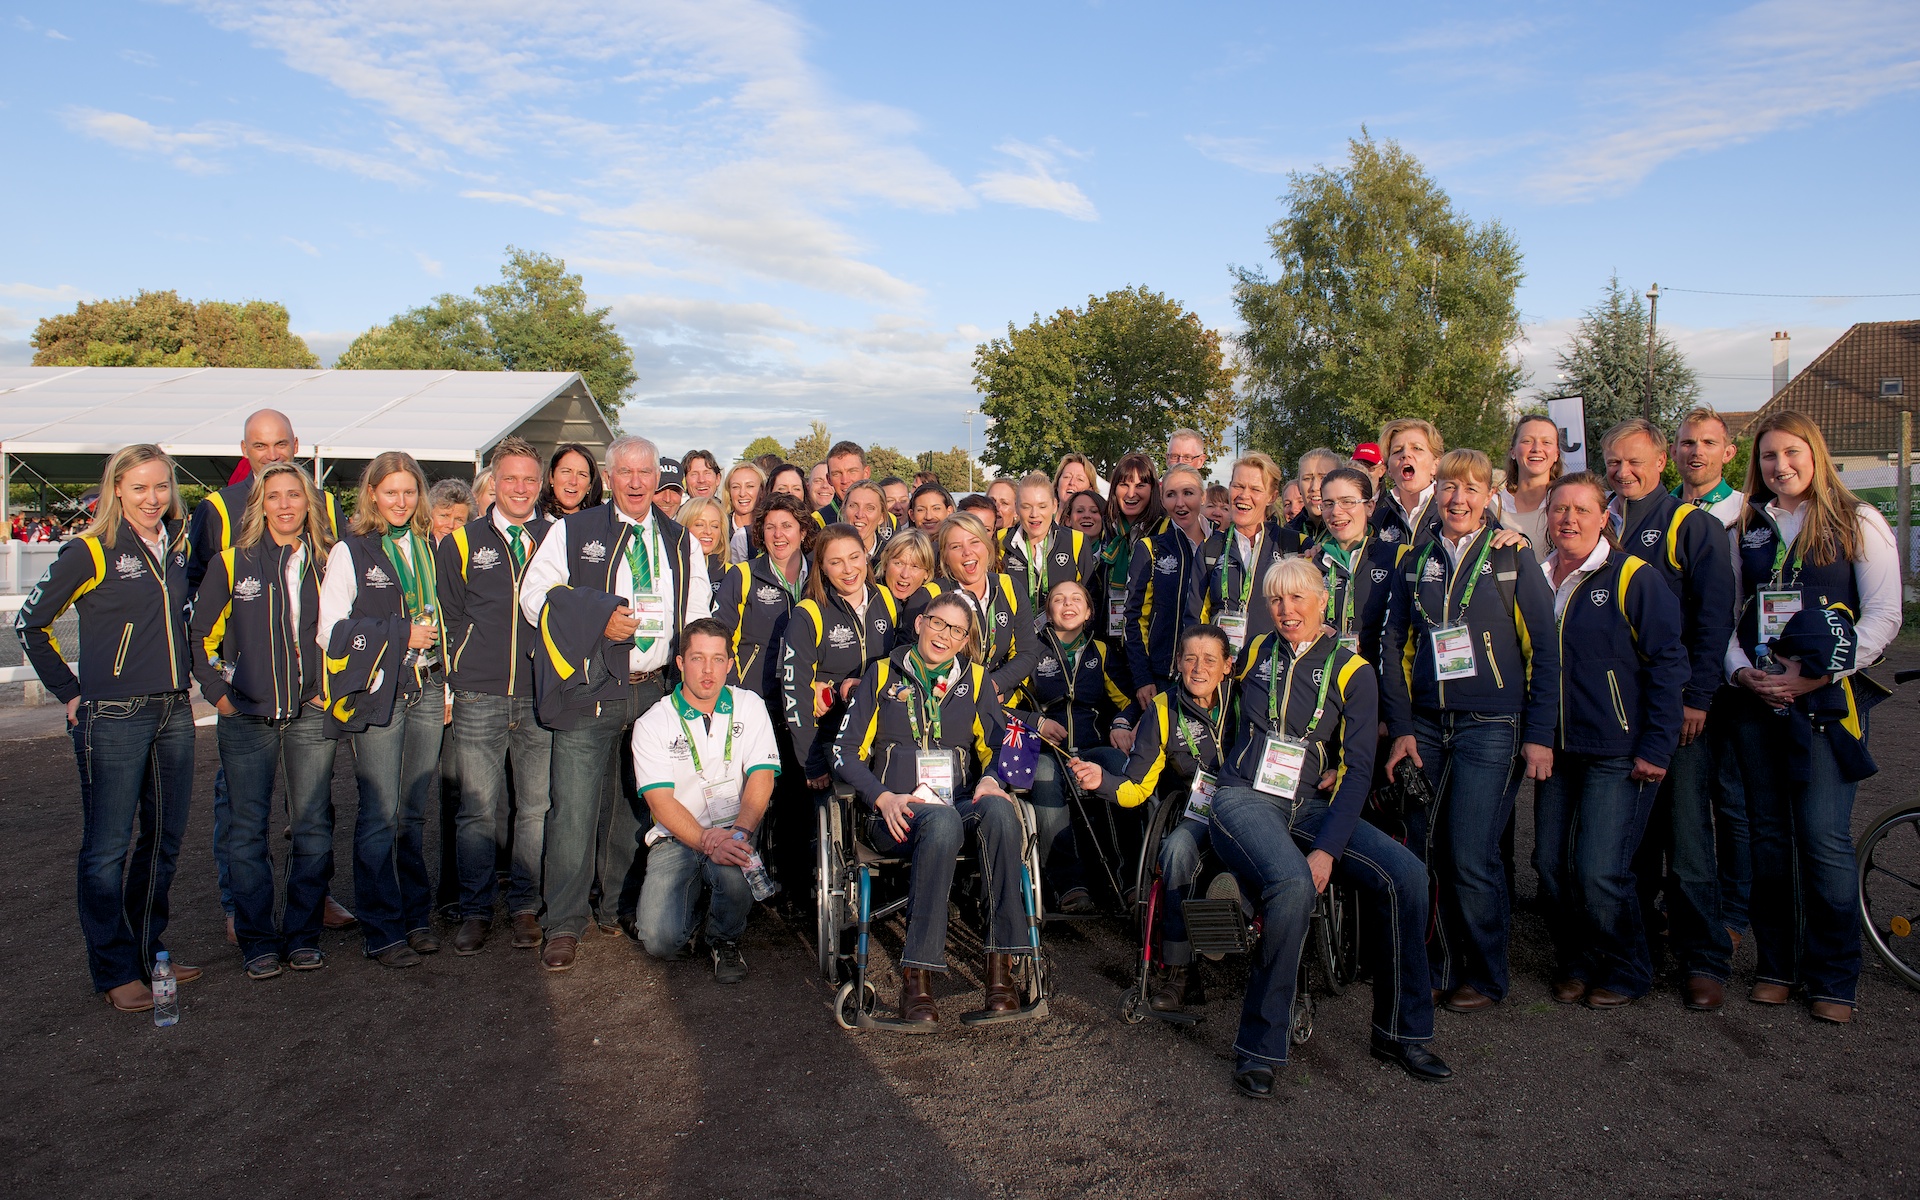 Australian Equestrian Team at WEG2014 Opening Ceremony